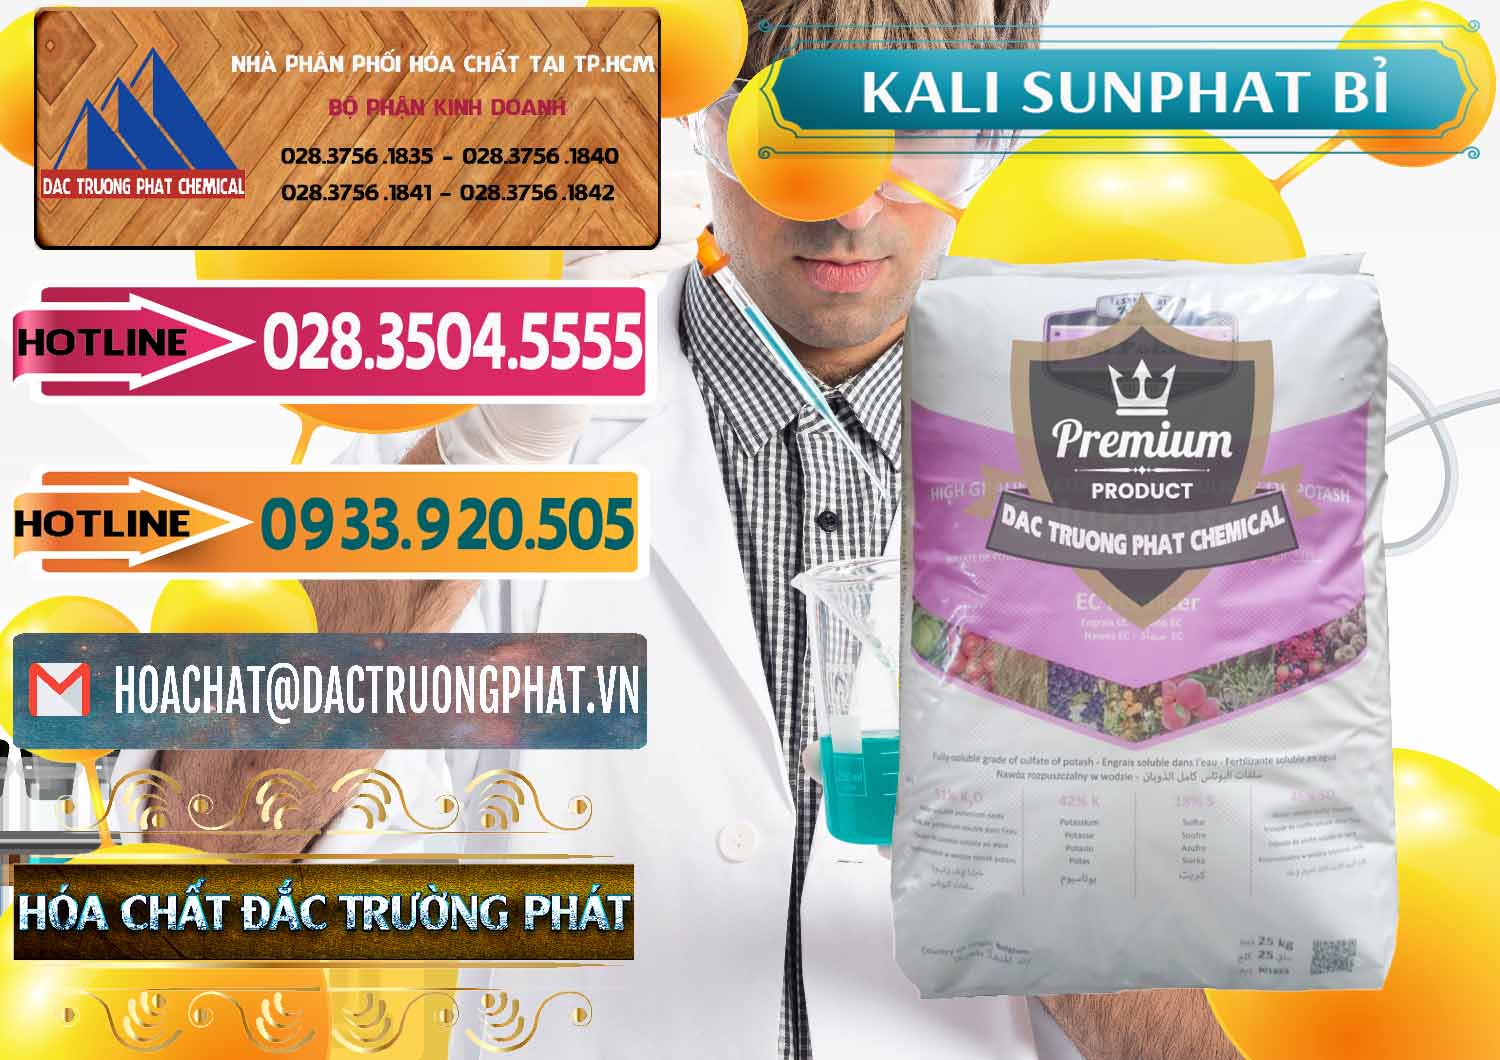 Nơi cung ứng ( bán ) Kali Sunphat – K2SO4 Bỉ Belgium - 0406 - Phân phối & cung cấp hóa chất tại TP.HCM - dactruongphat.vn